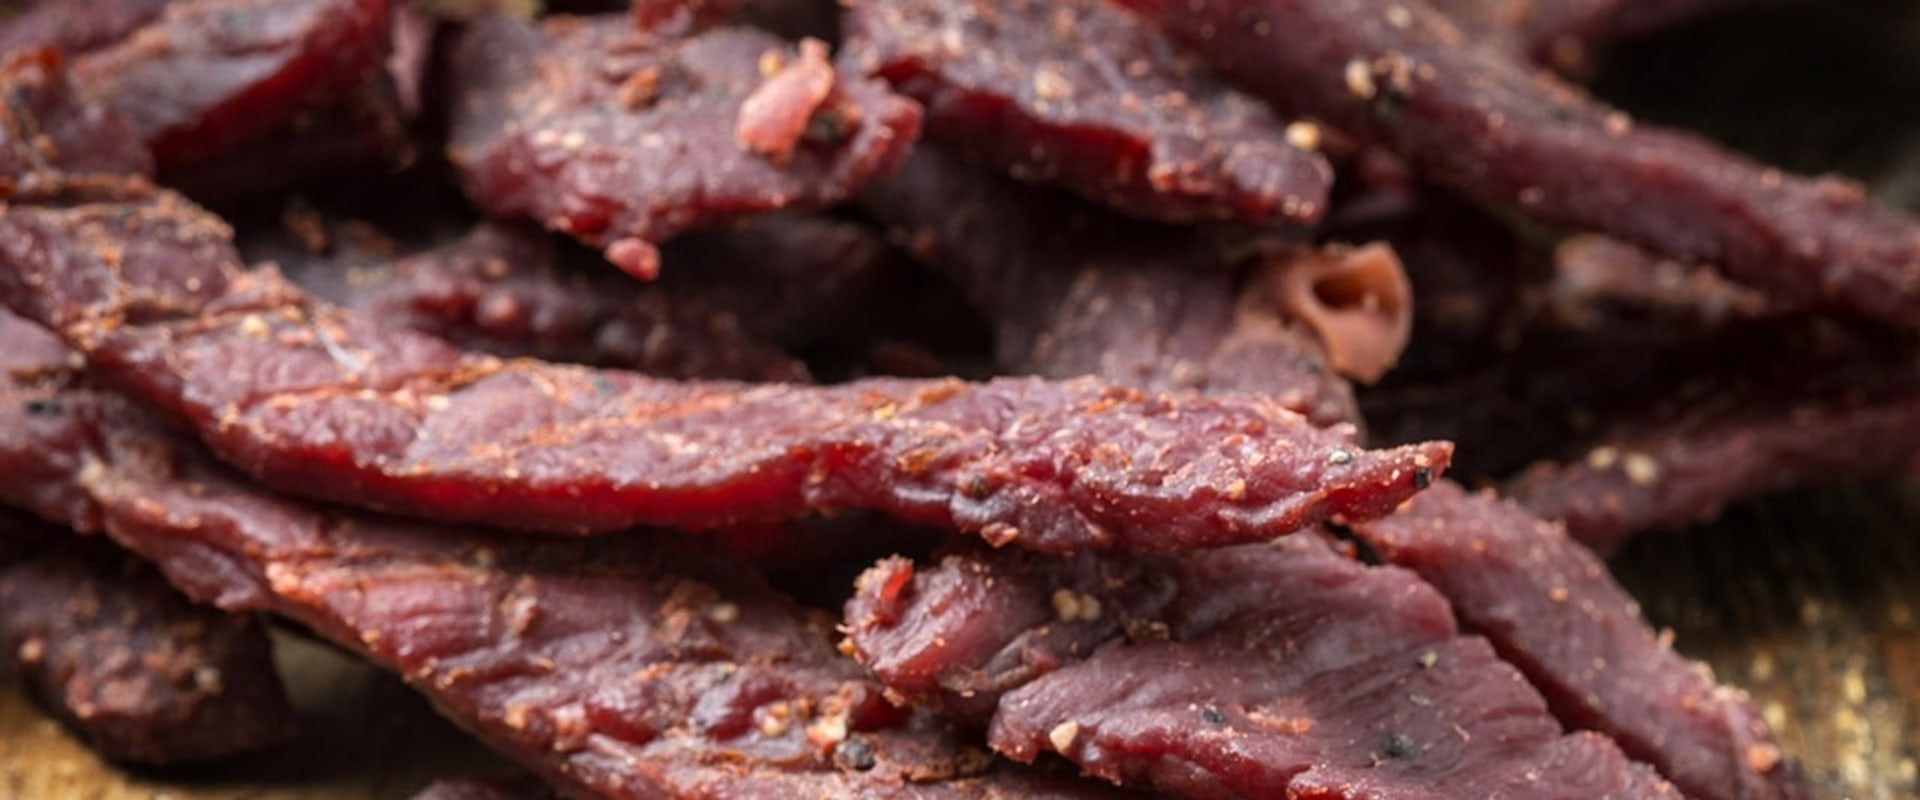 Is beef jerky healthier than regular beef?